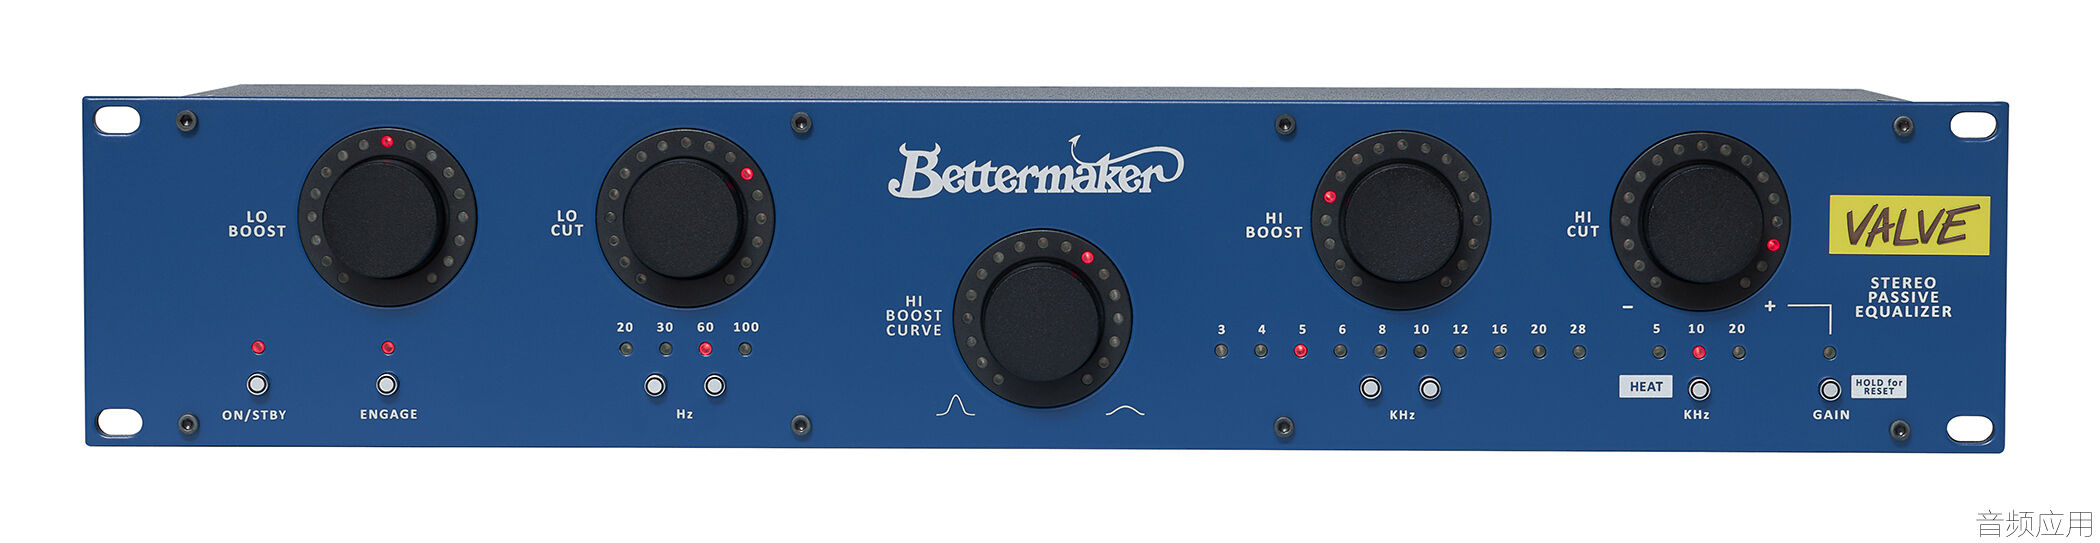 1114526d1715807330-bettermaker-releases-valve-stereo-passive-equalizer-vspe-bett.jpg